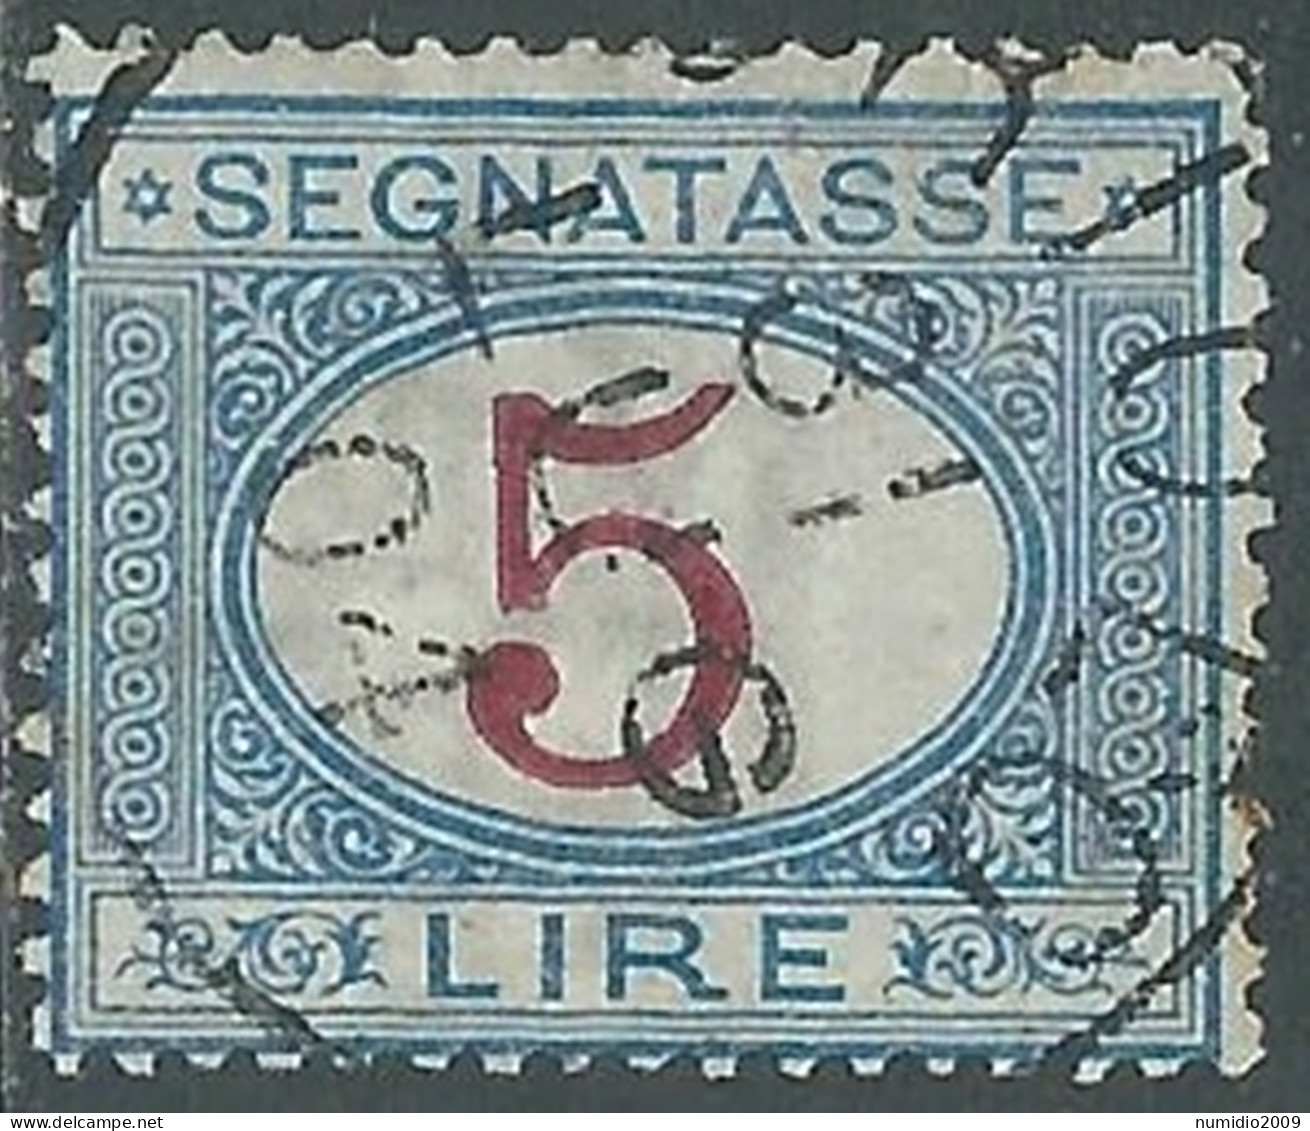 1903 REGNO SEGNATASSE USATO 5 LIRE - P13-7 - Postage Due